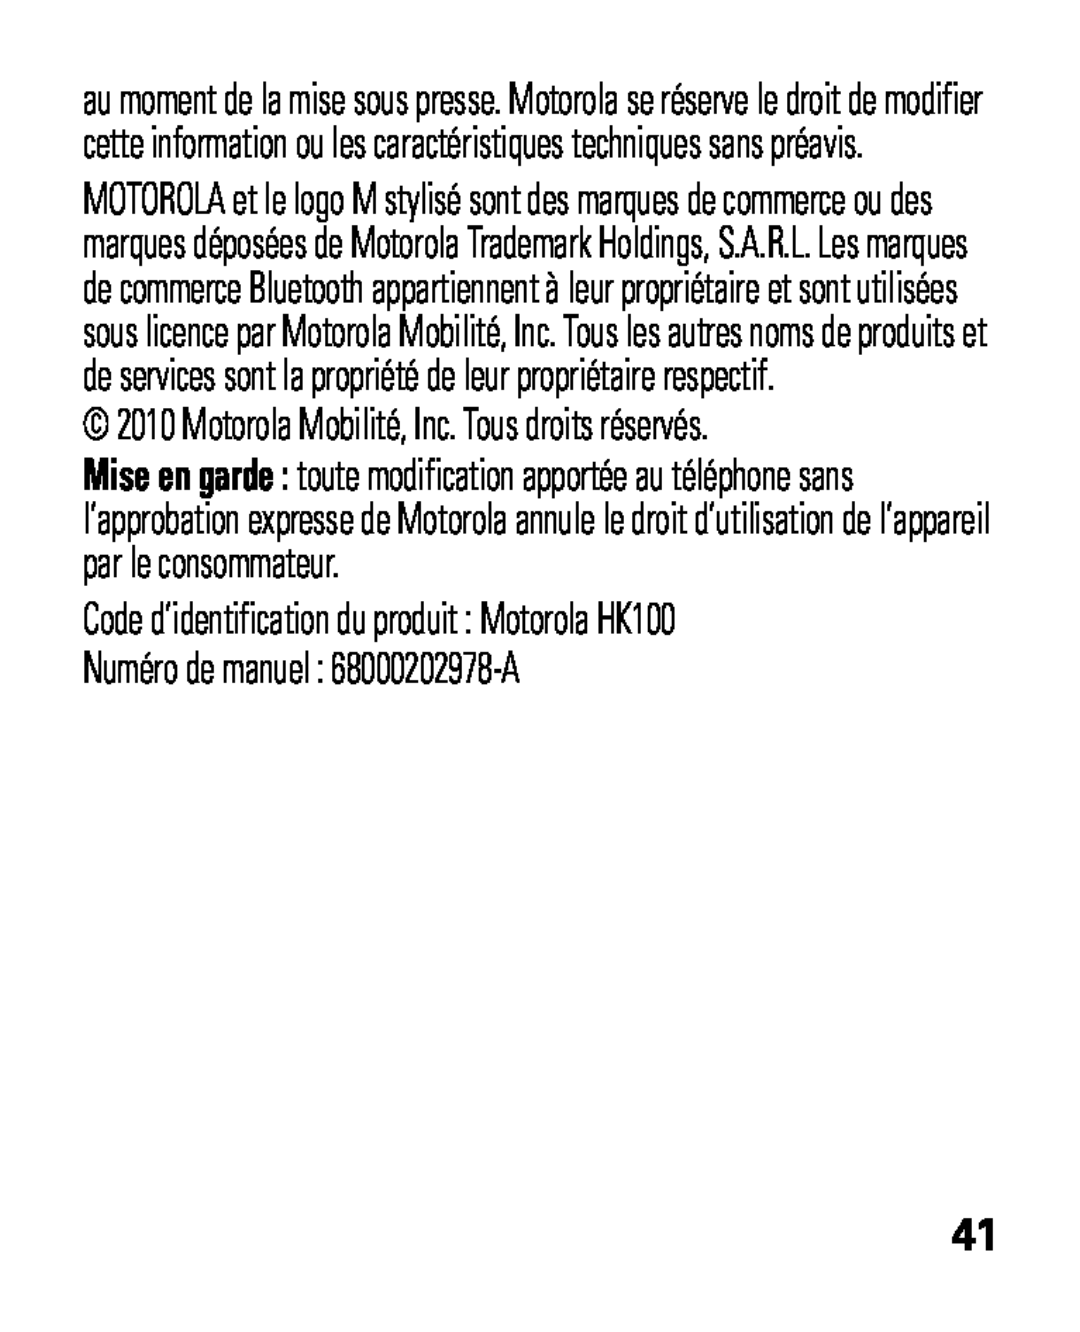 Motorola HK100 quick start Numéro de manuel : 68000202978-A, Motorola Mobilité, Inc. Tous droits réservés 